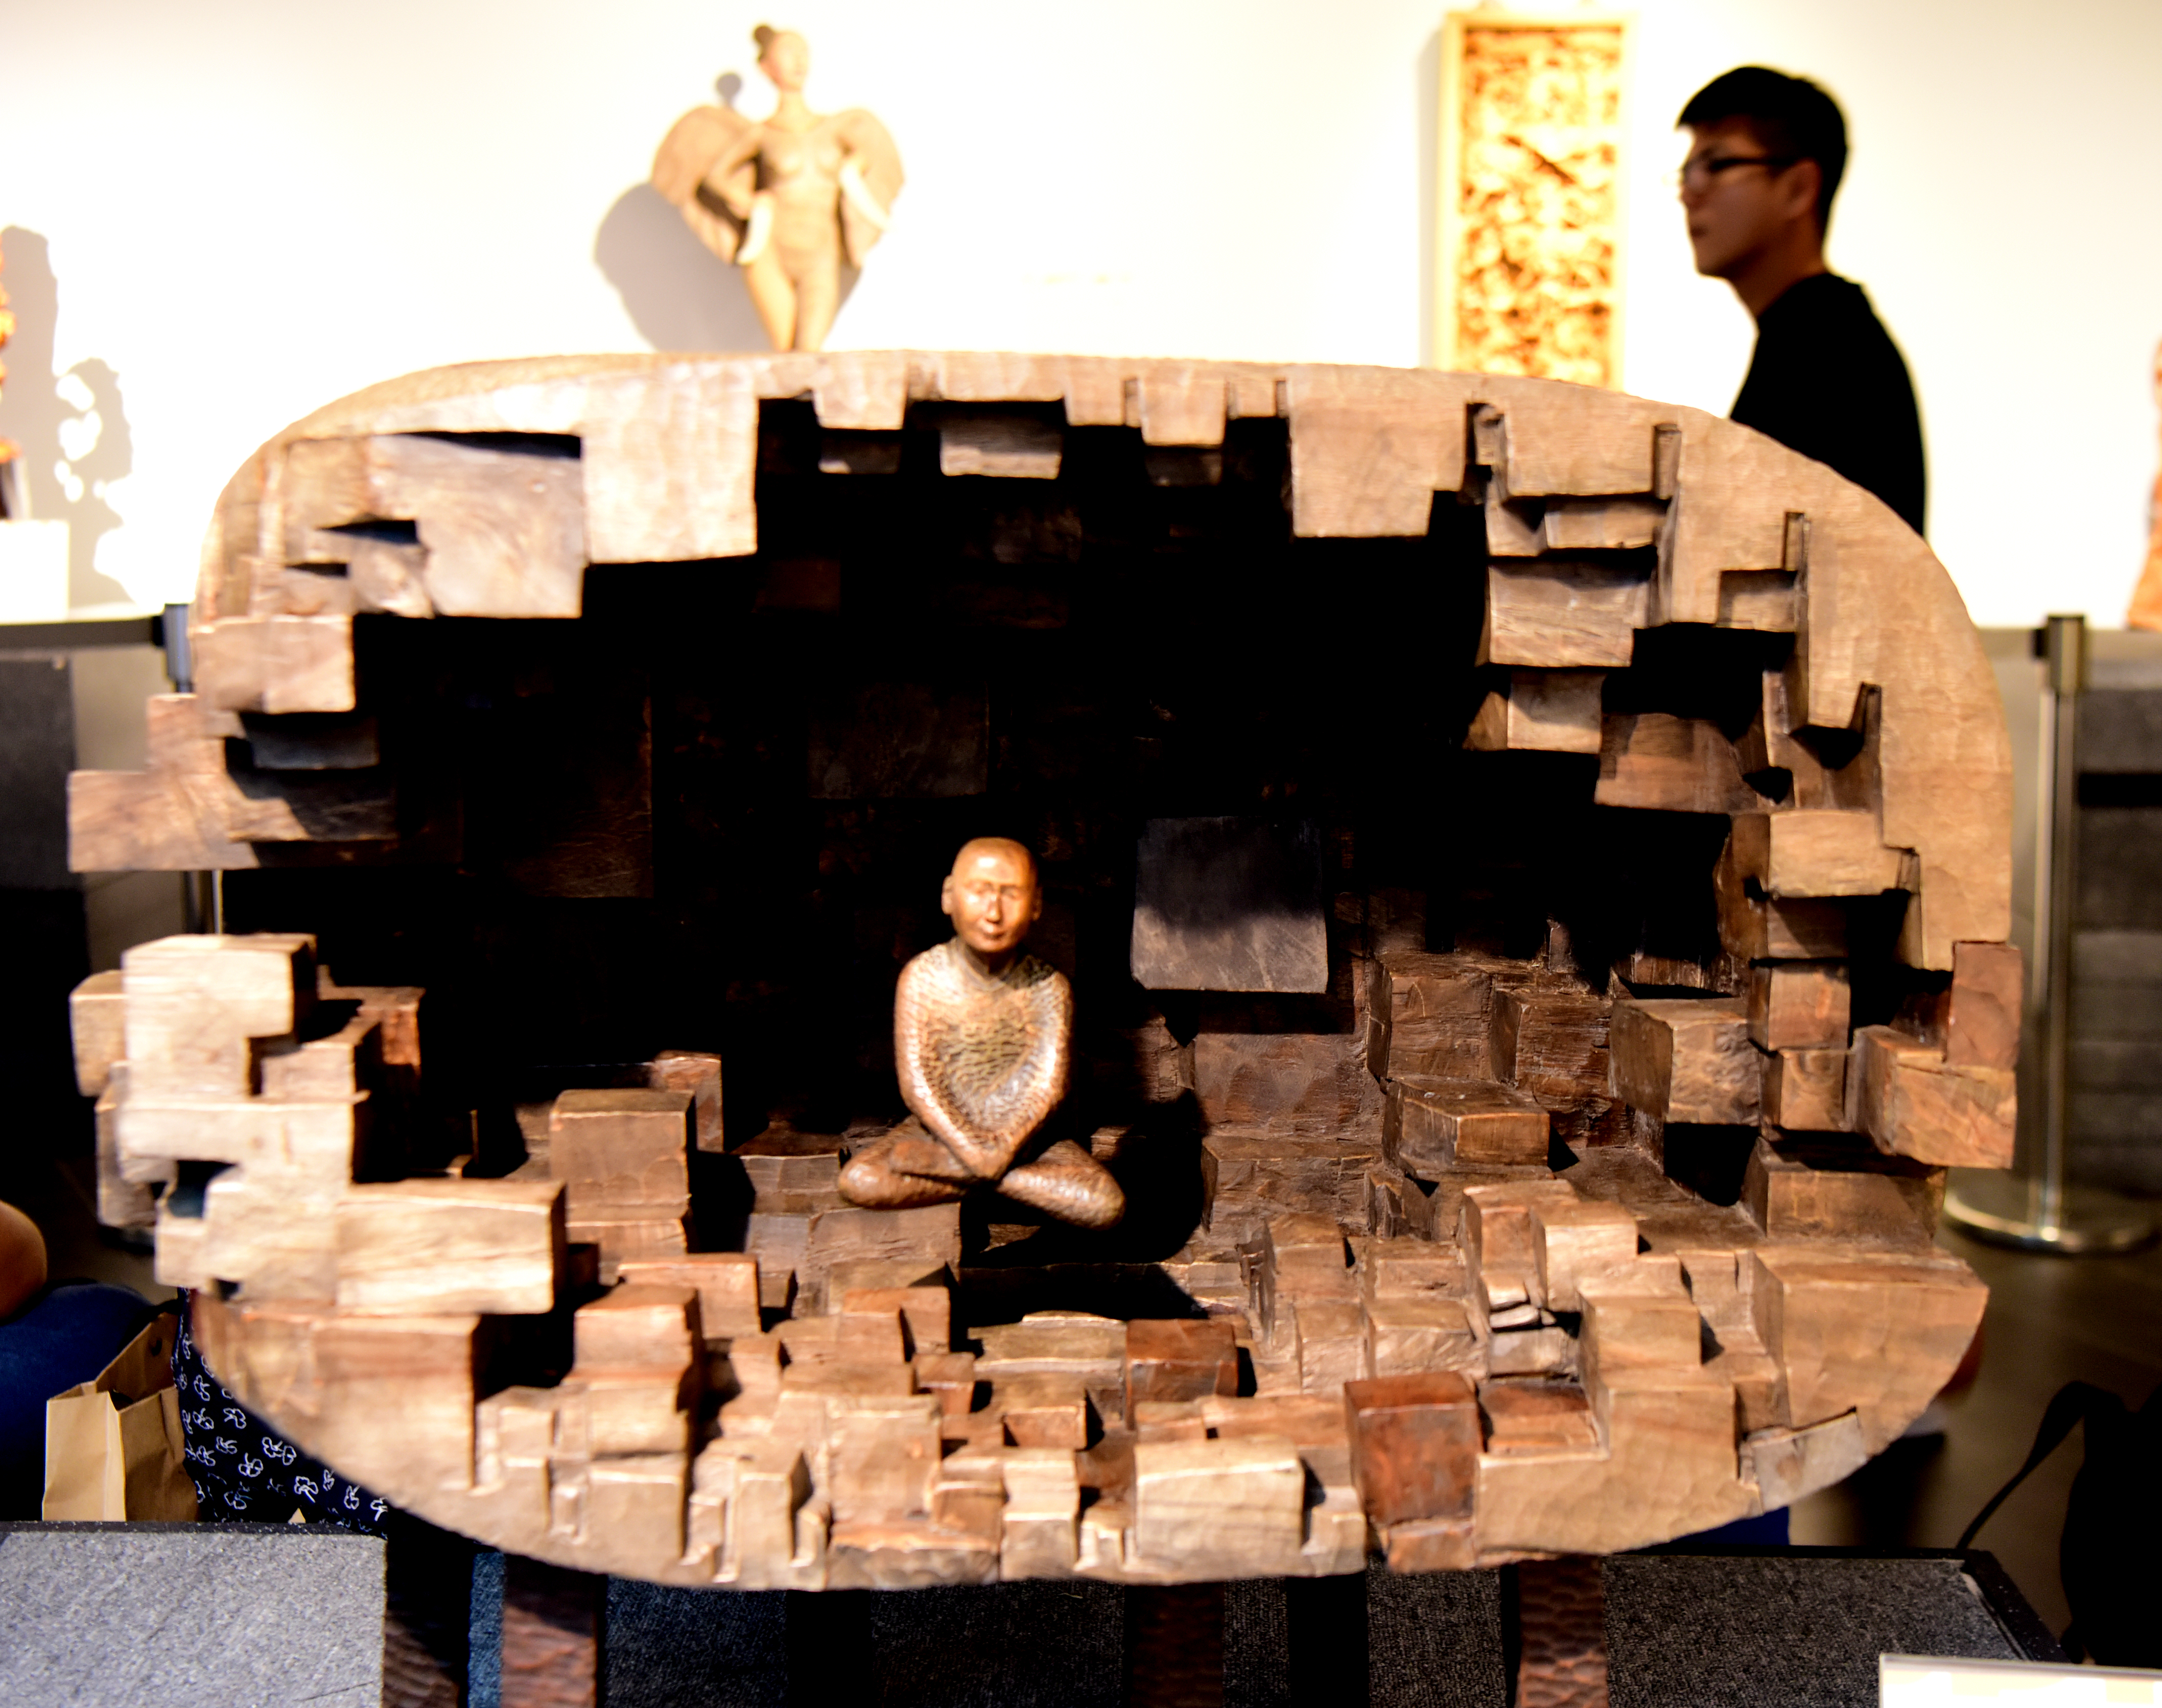 近日,台湾木雕艺术展在苗栗县三义木雕博物馆举行,共展出获奖木雕作品